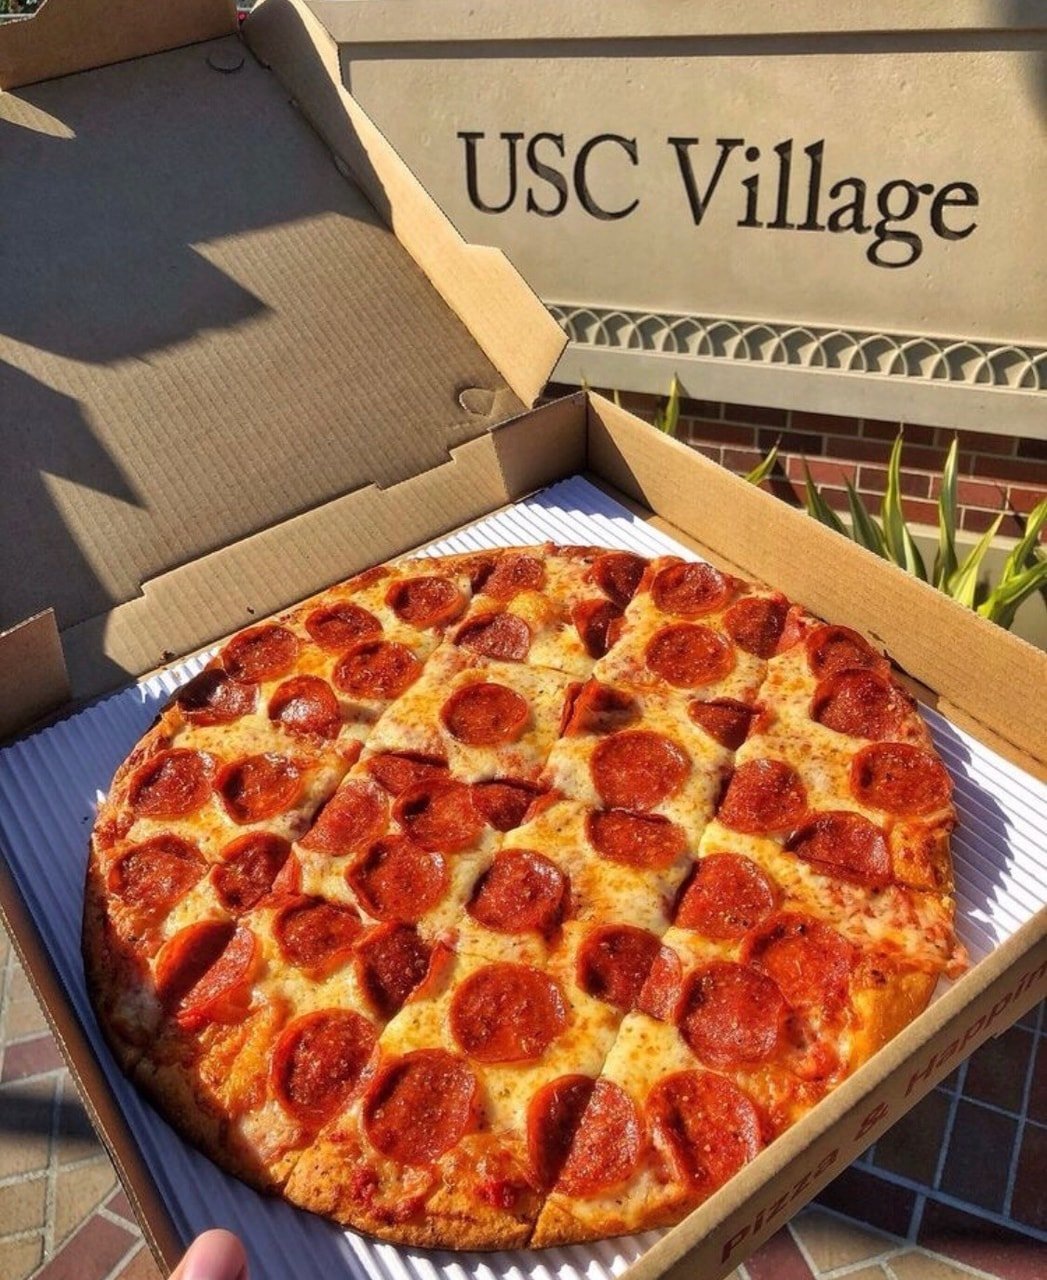 фото пепперони пицца в коробке фото 43